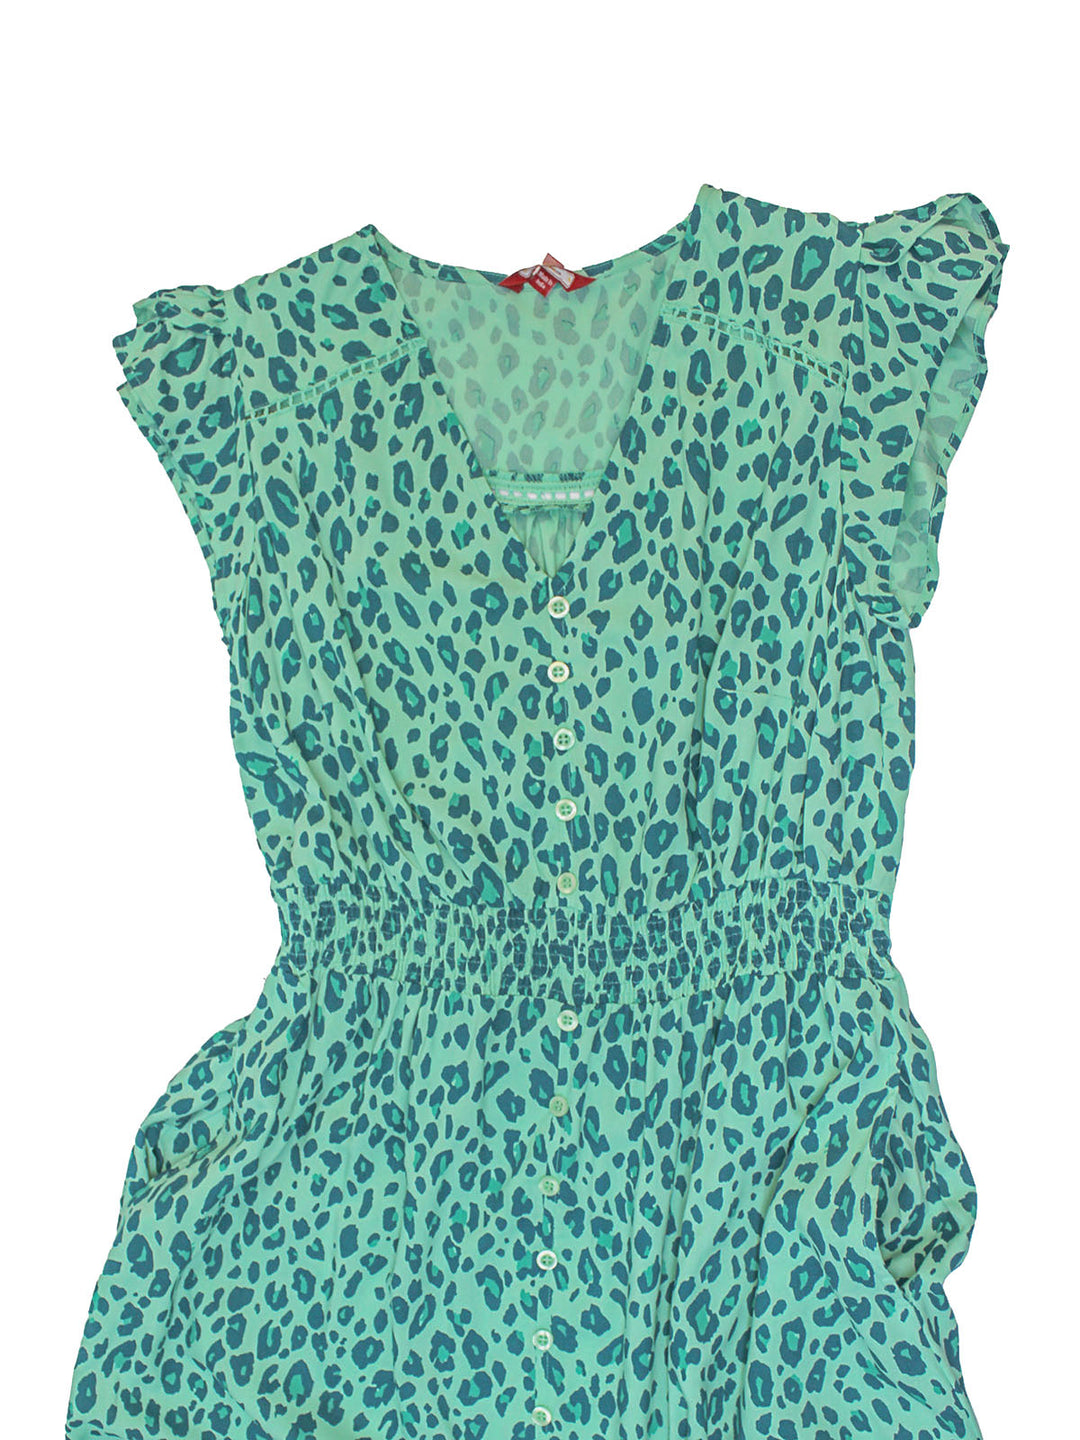 Leopard Print Cotton Lace Maxi Dress